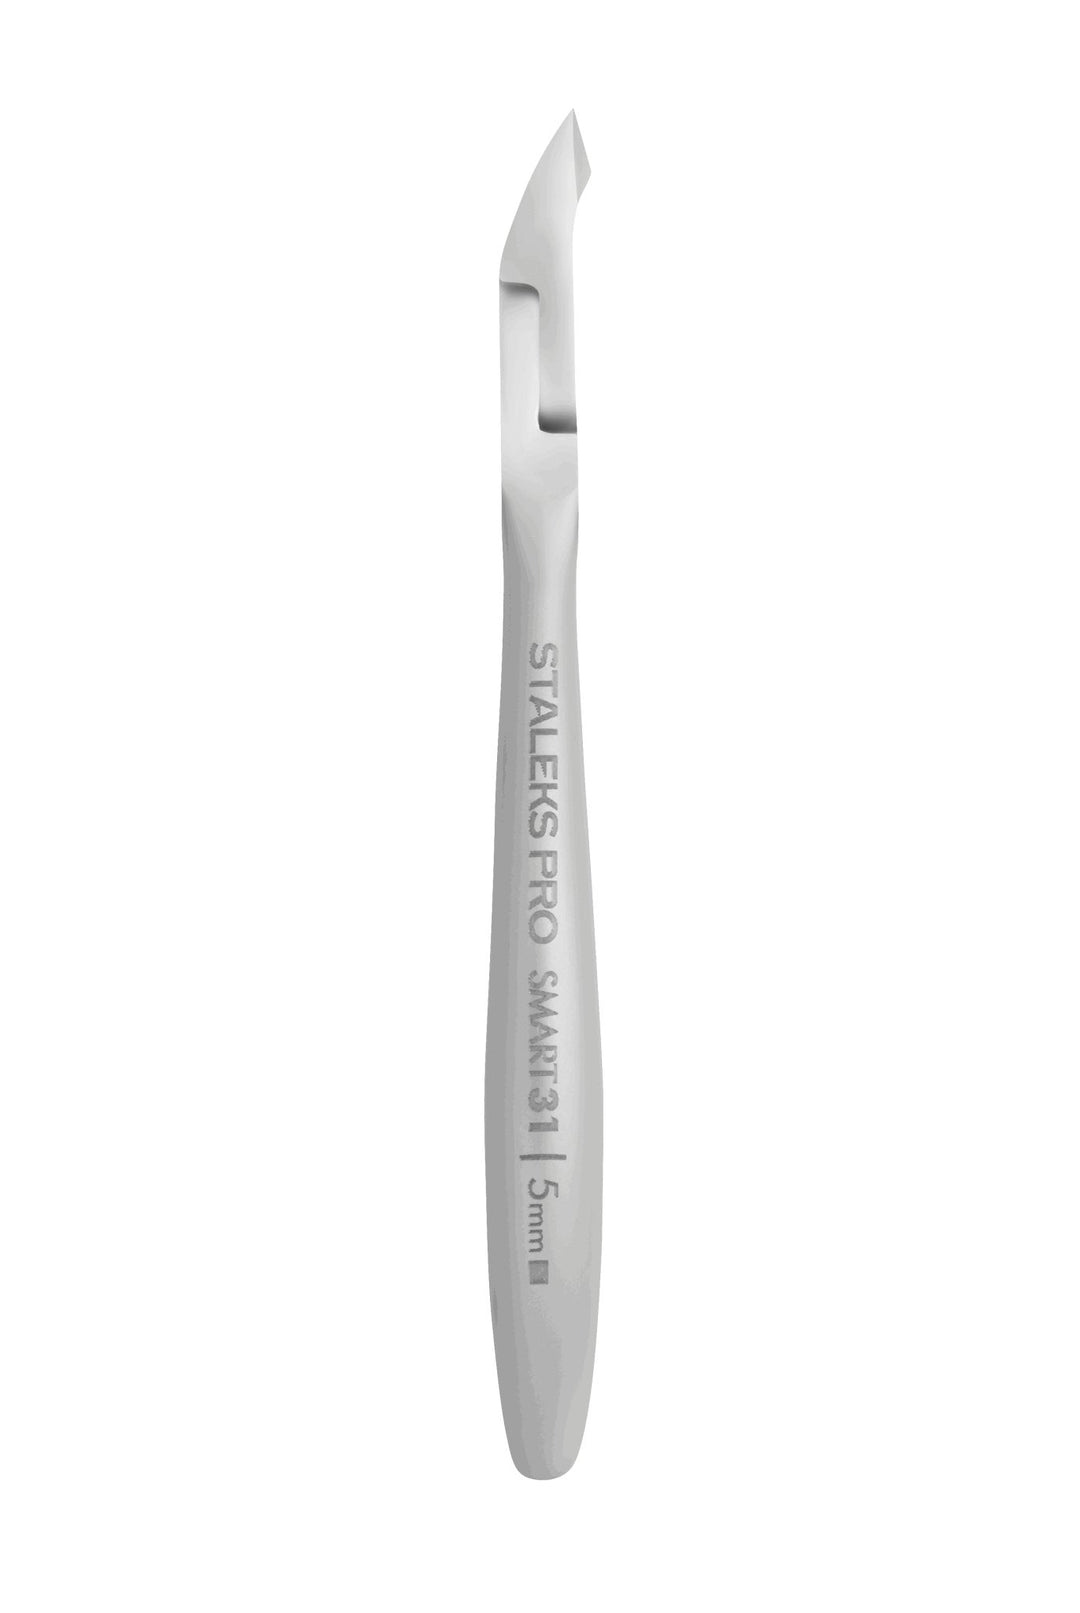 Staleks Cuticle Nipper  Smart 31 - 5 mm Jaw | U-tools